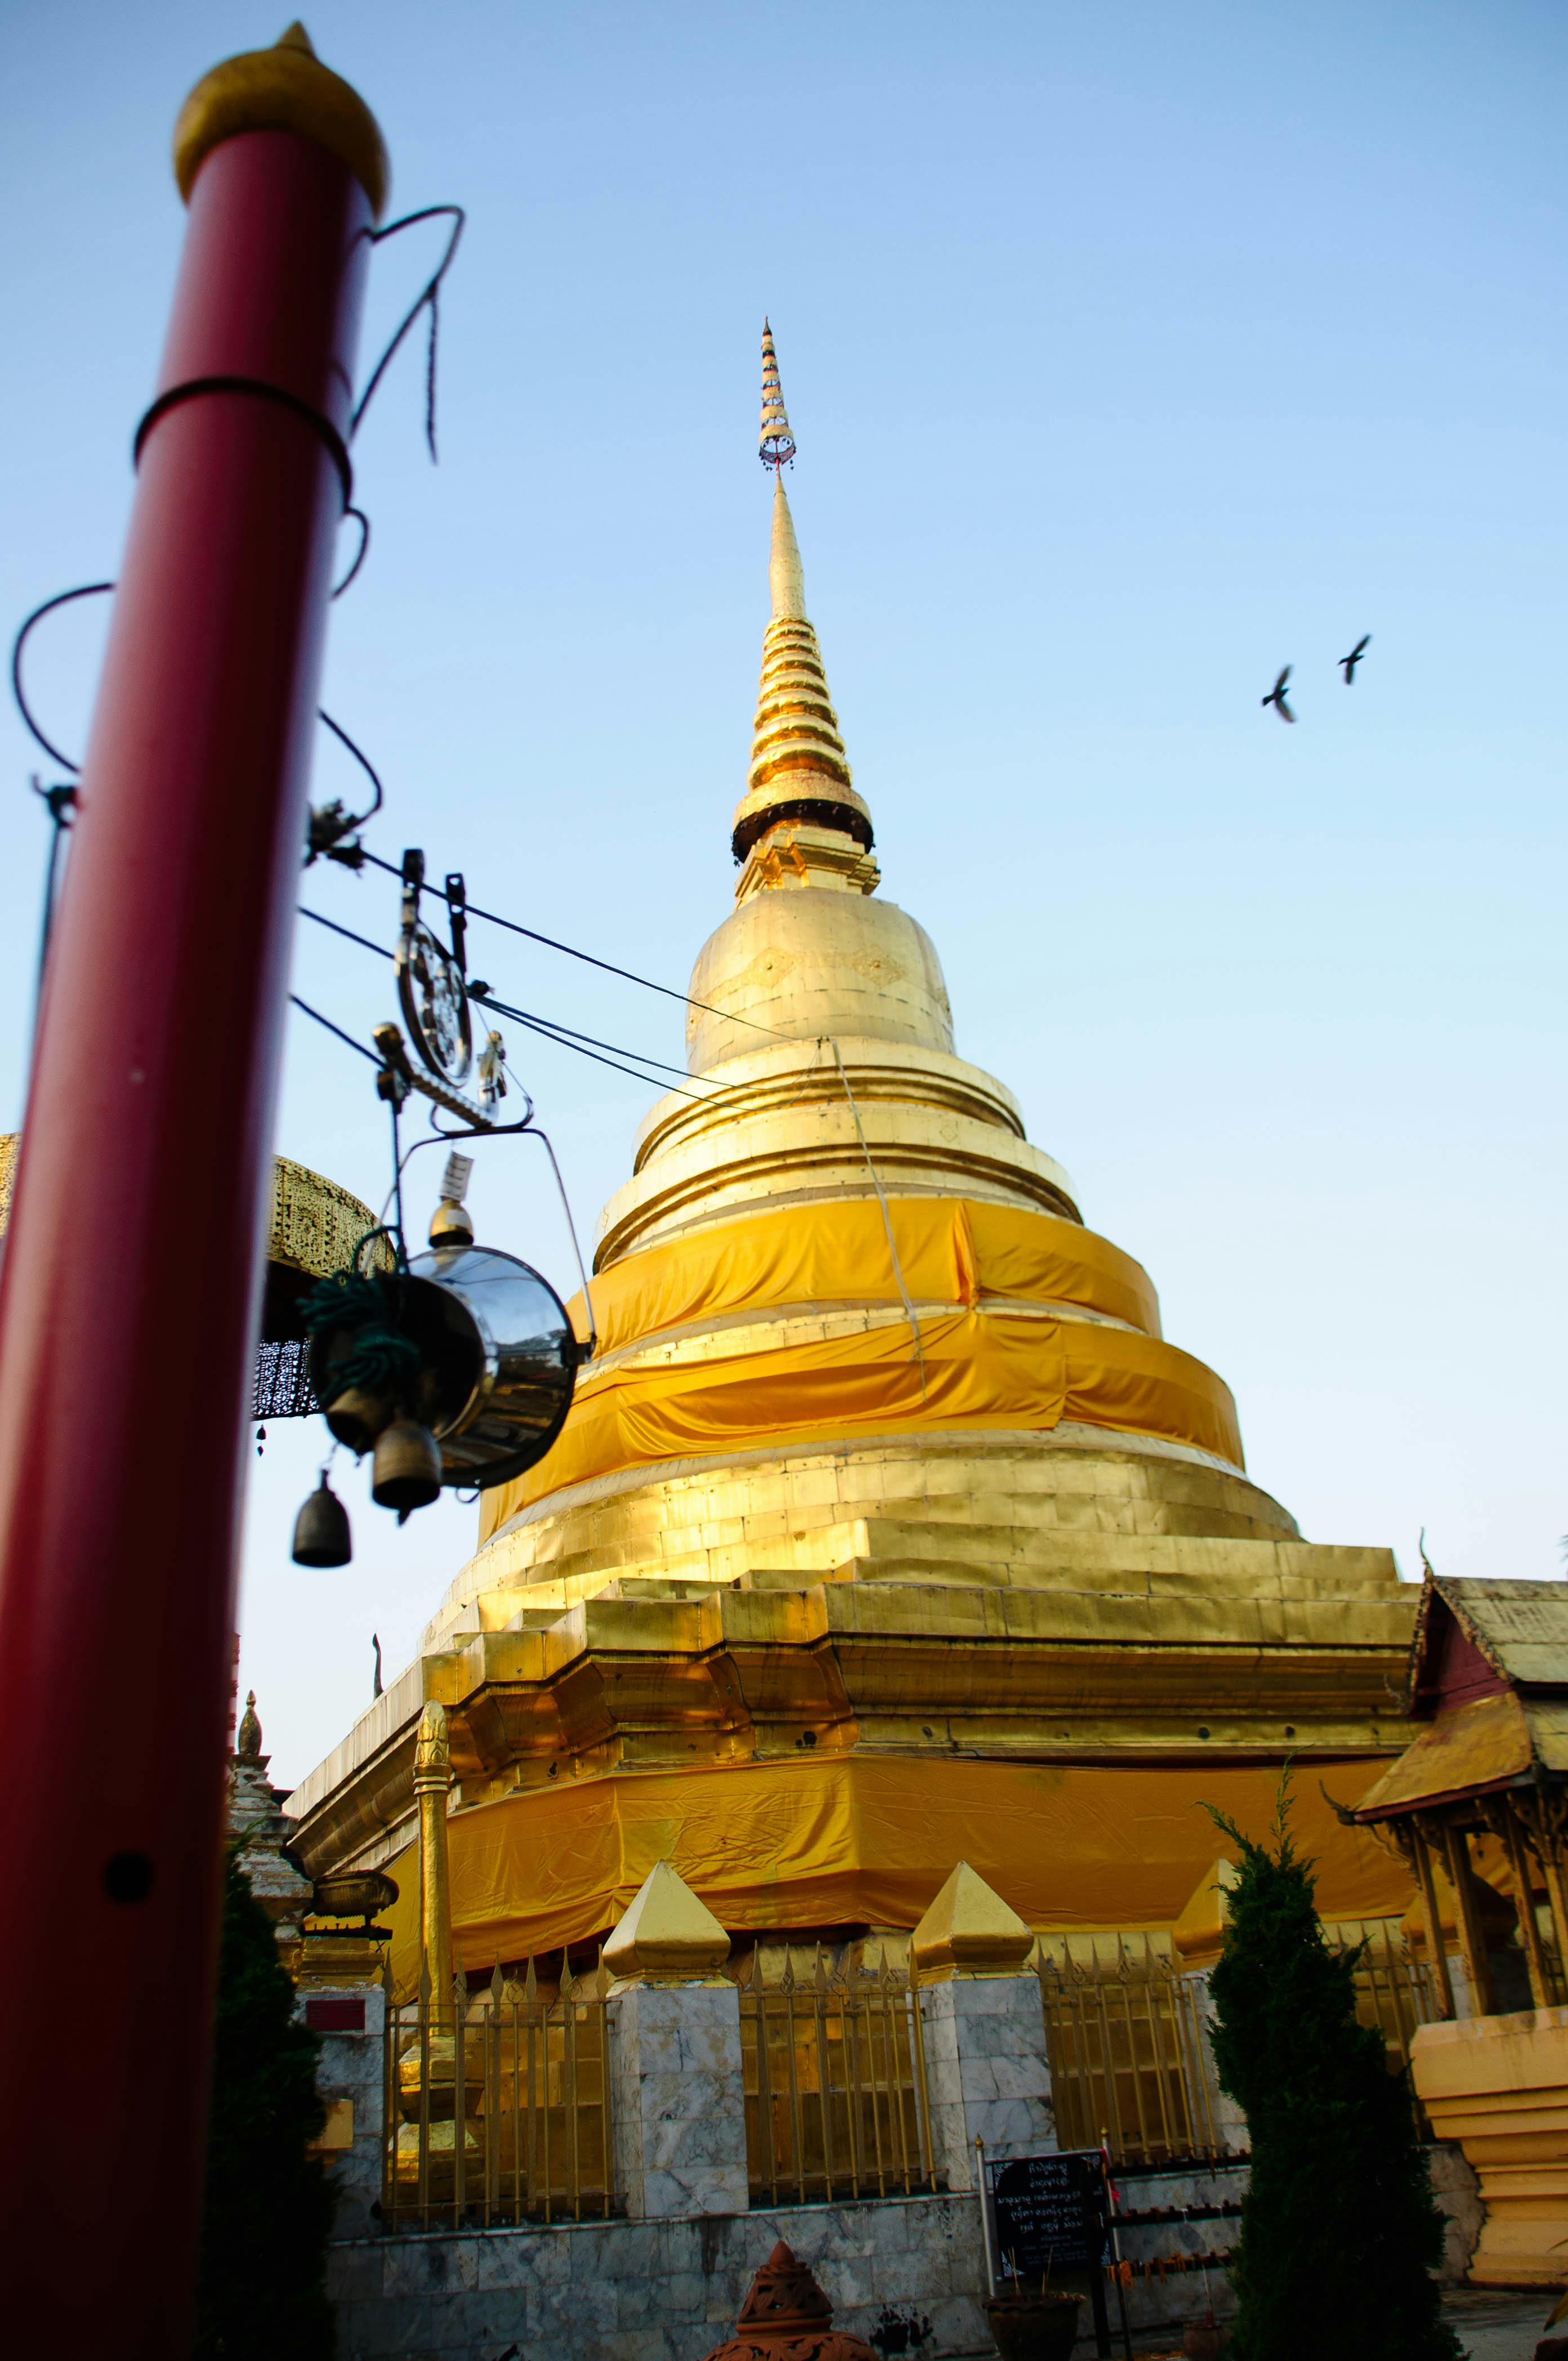 Free stock photo of Wat PrathatSadet